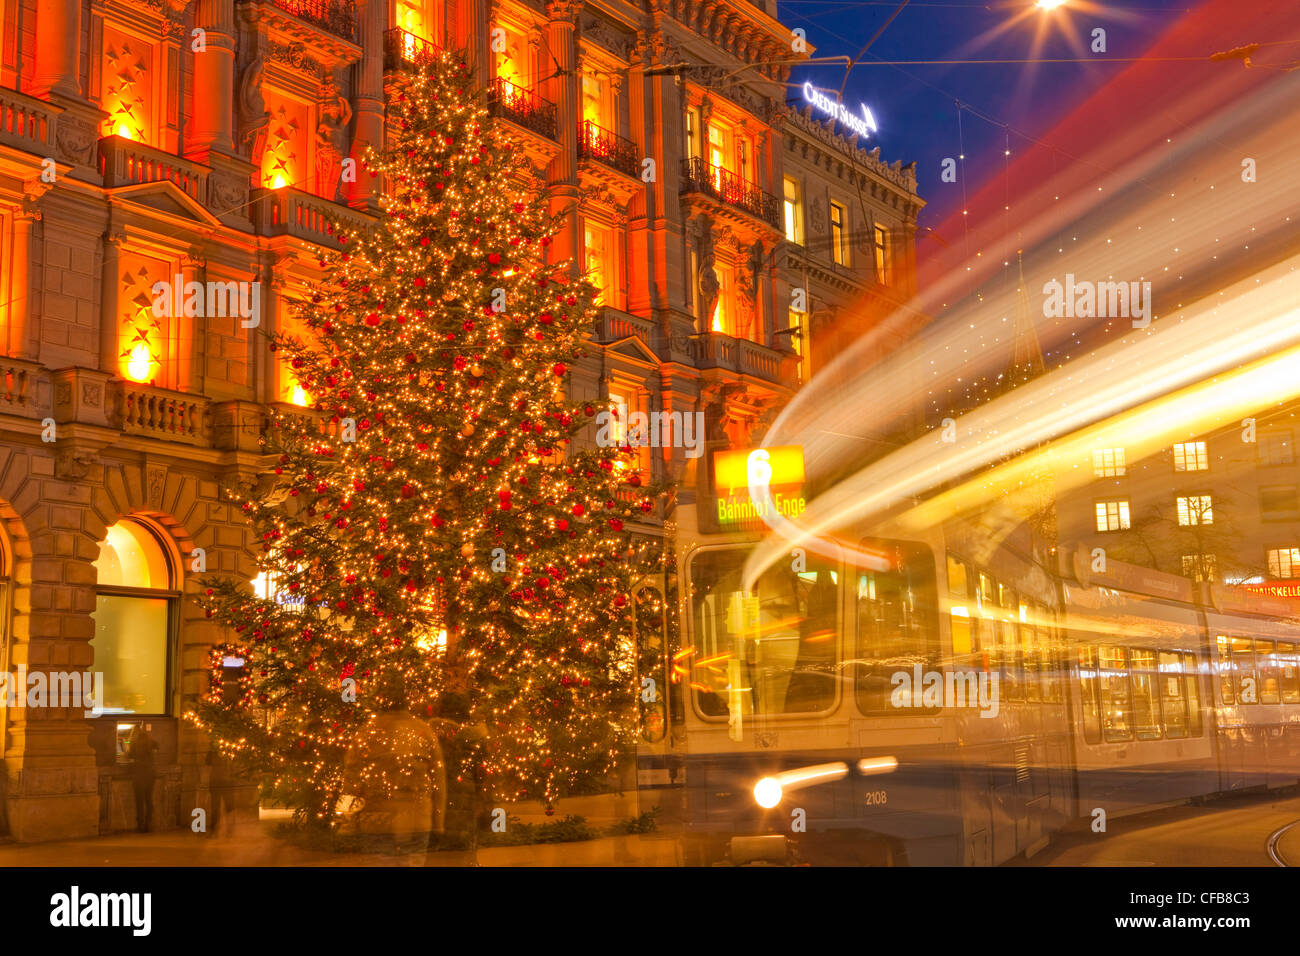 Winter, Schnee, Nacht, dunkel, Weihnachten, Advent, Stadt, Stadt, Kanton  Zürich, Schweiz, Europa, Parade statt, Weihnachtsbeleuchtung  Stockfotografie - Alamy